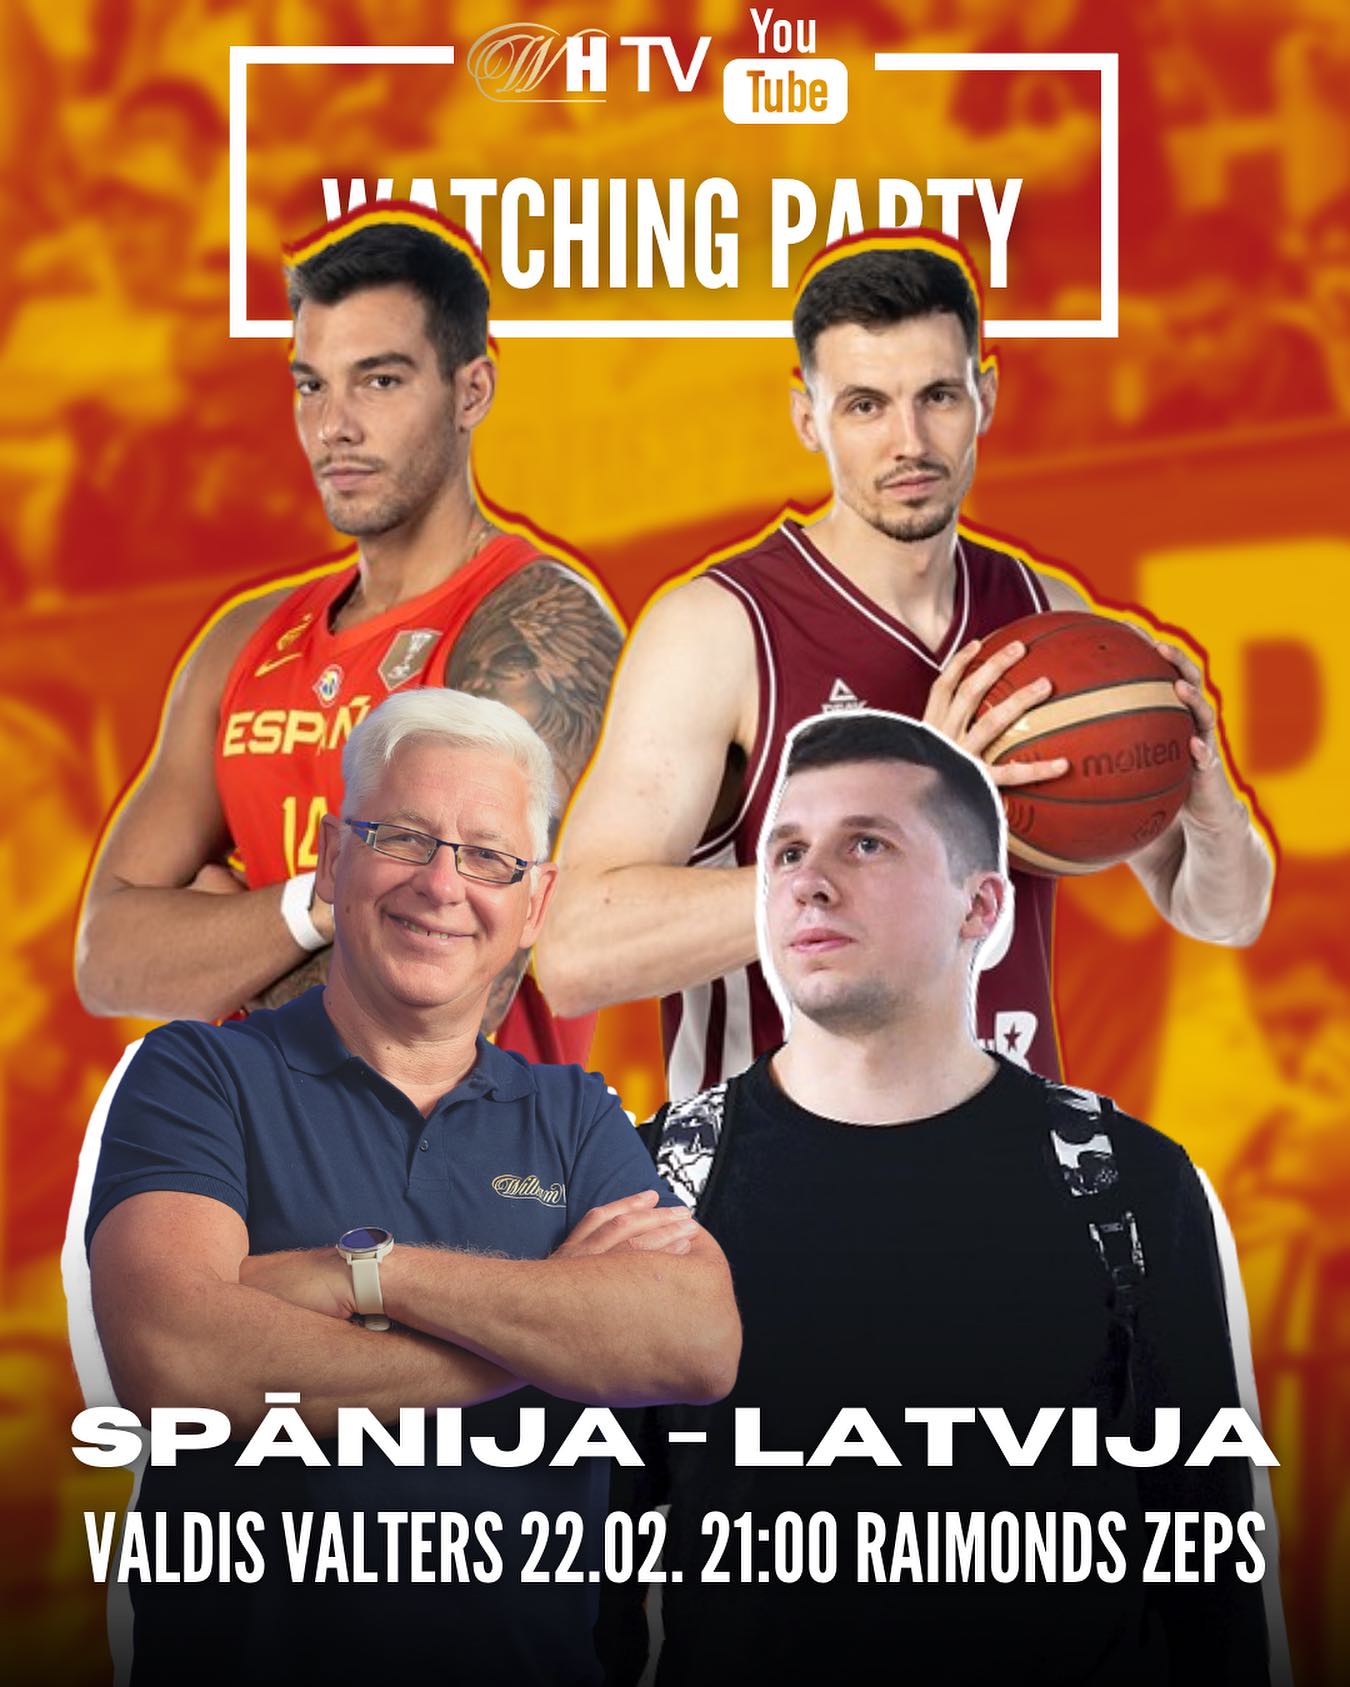 Skatīsimies Latvijas basketbola izlases spēli pret Spāniju kopā ar Valdi Valteru un Raimondu Zepu🏀🍿

🎥Pieslēdzies WilliamHill TV YouTube kanālam 21:00😎